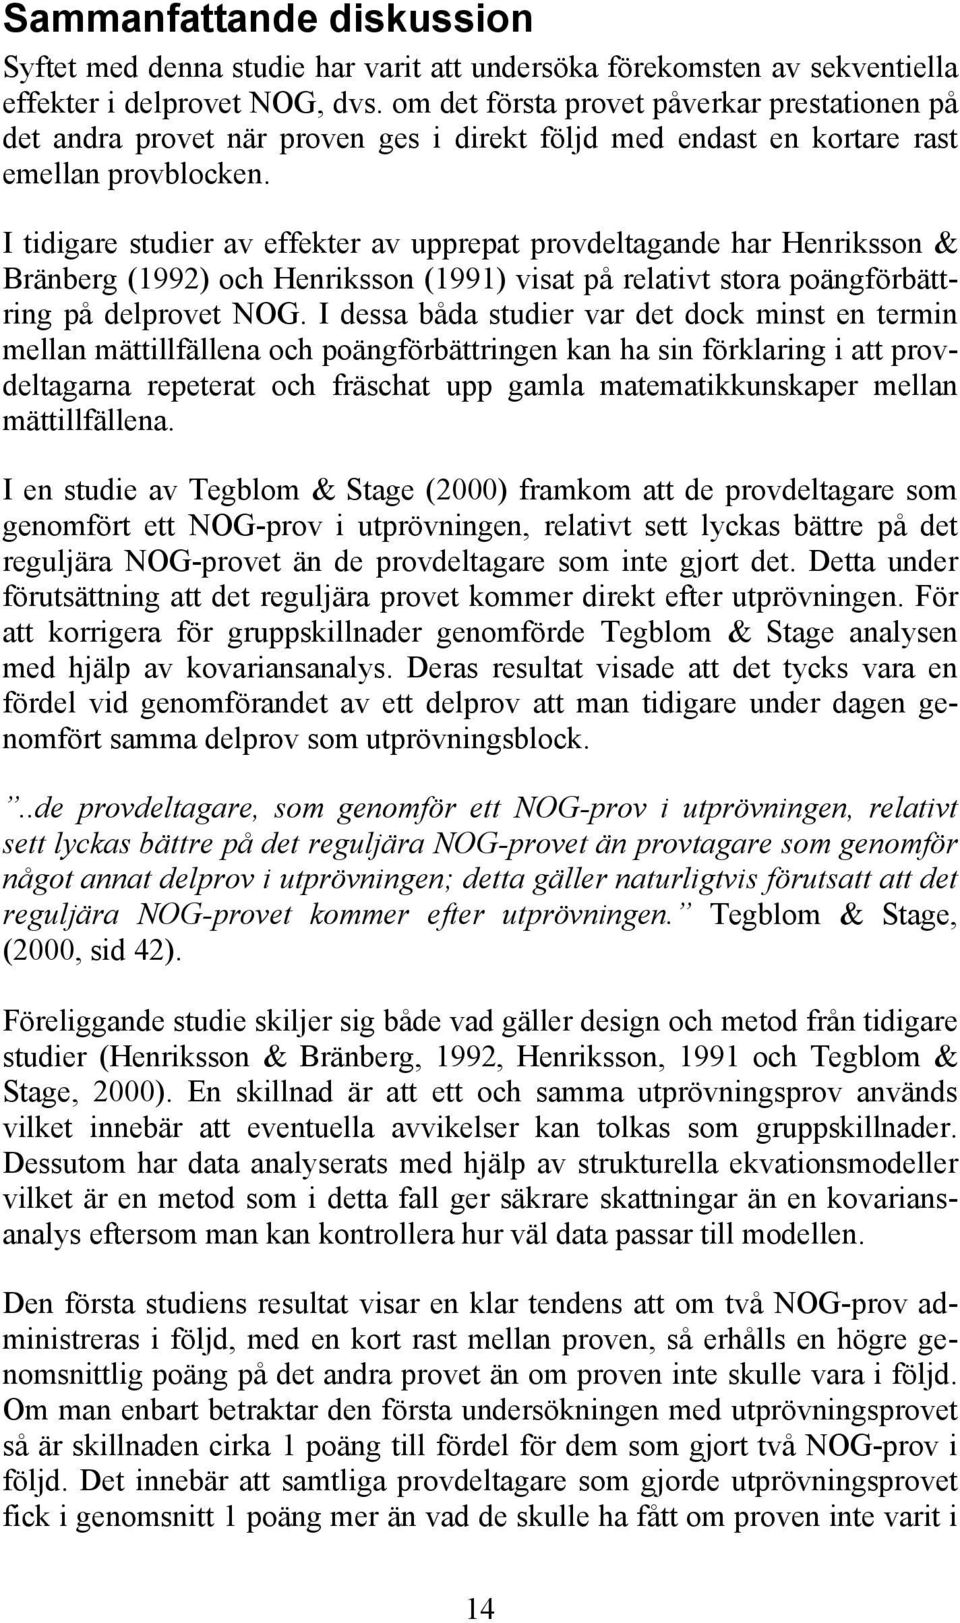 I tidigare studier av effekter av upprepat provdeltagande har Henriksson & Bränberg (1992) och Henriksson (1991) visat på relativt stora poängförbättring på delprovet NOG.